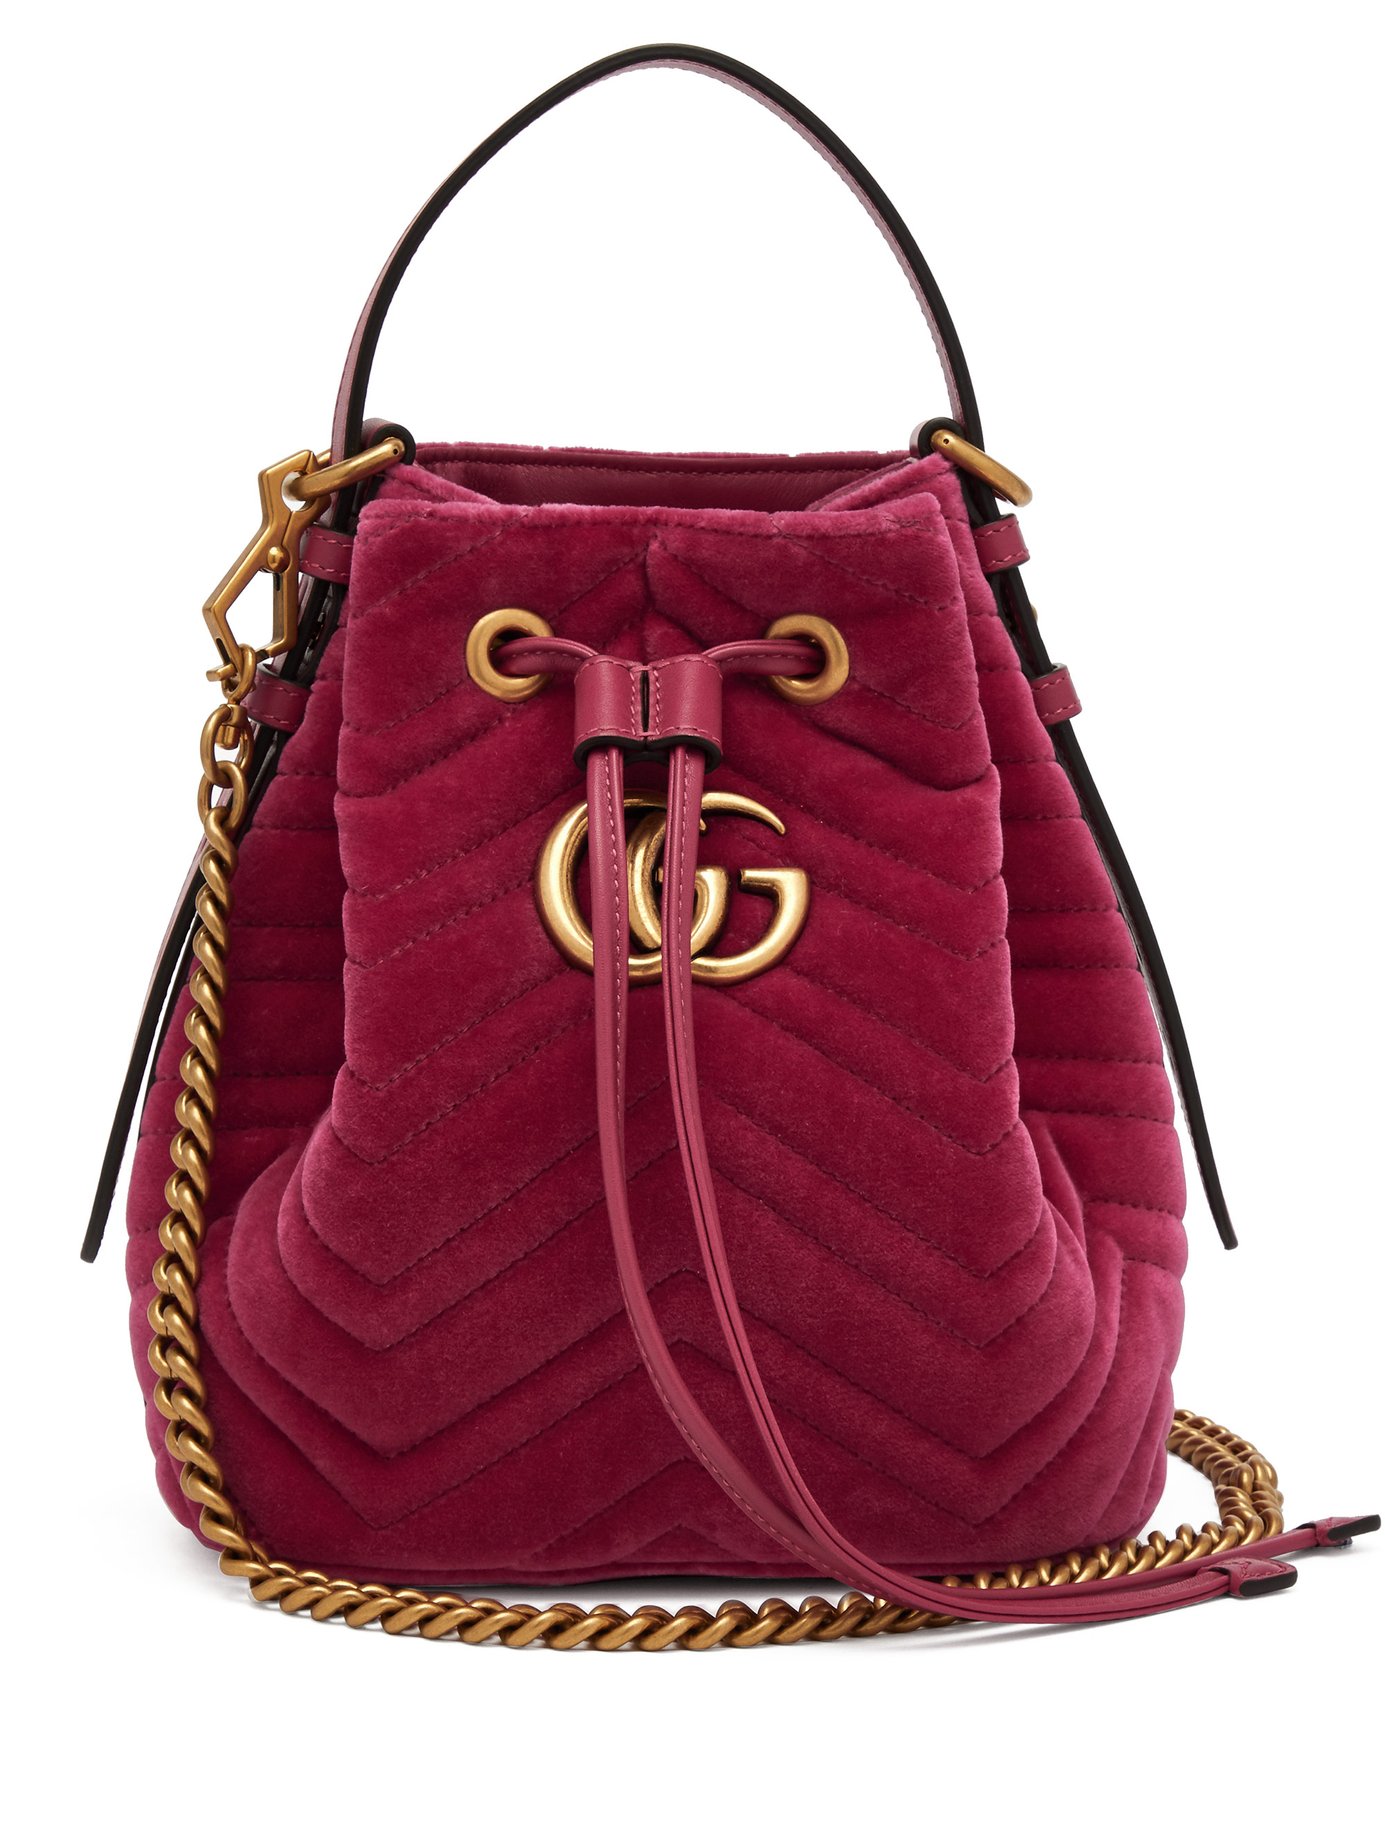 Gucci Handbag Price Malaysia